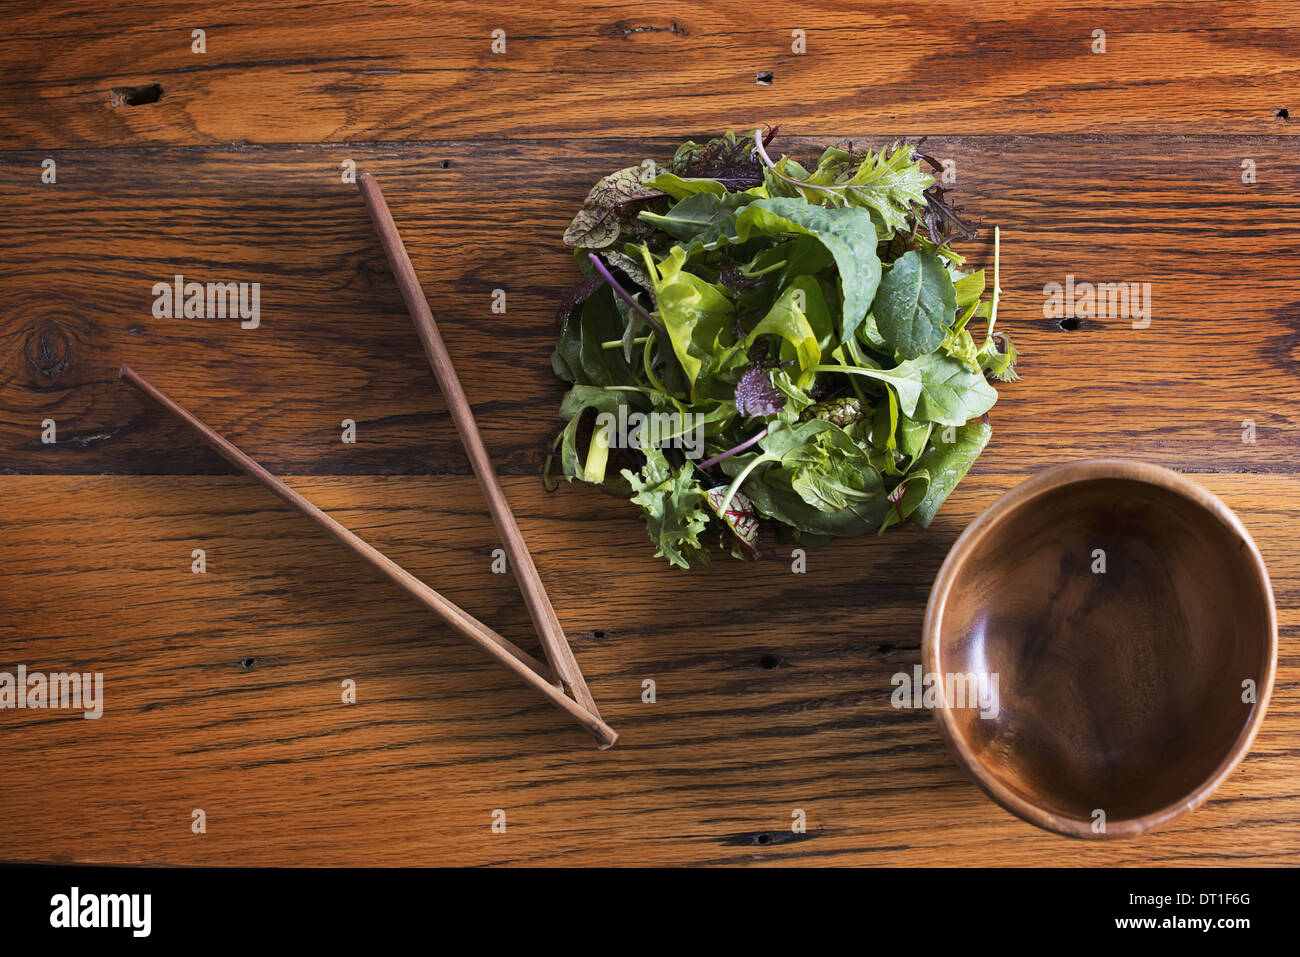 Un petit bol en bois poli ronde et d'un tas de feuilles de salade mixte organique avec des baguettes en bois Banque D'Images